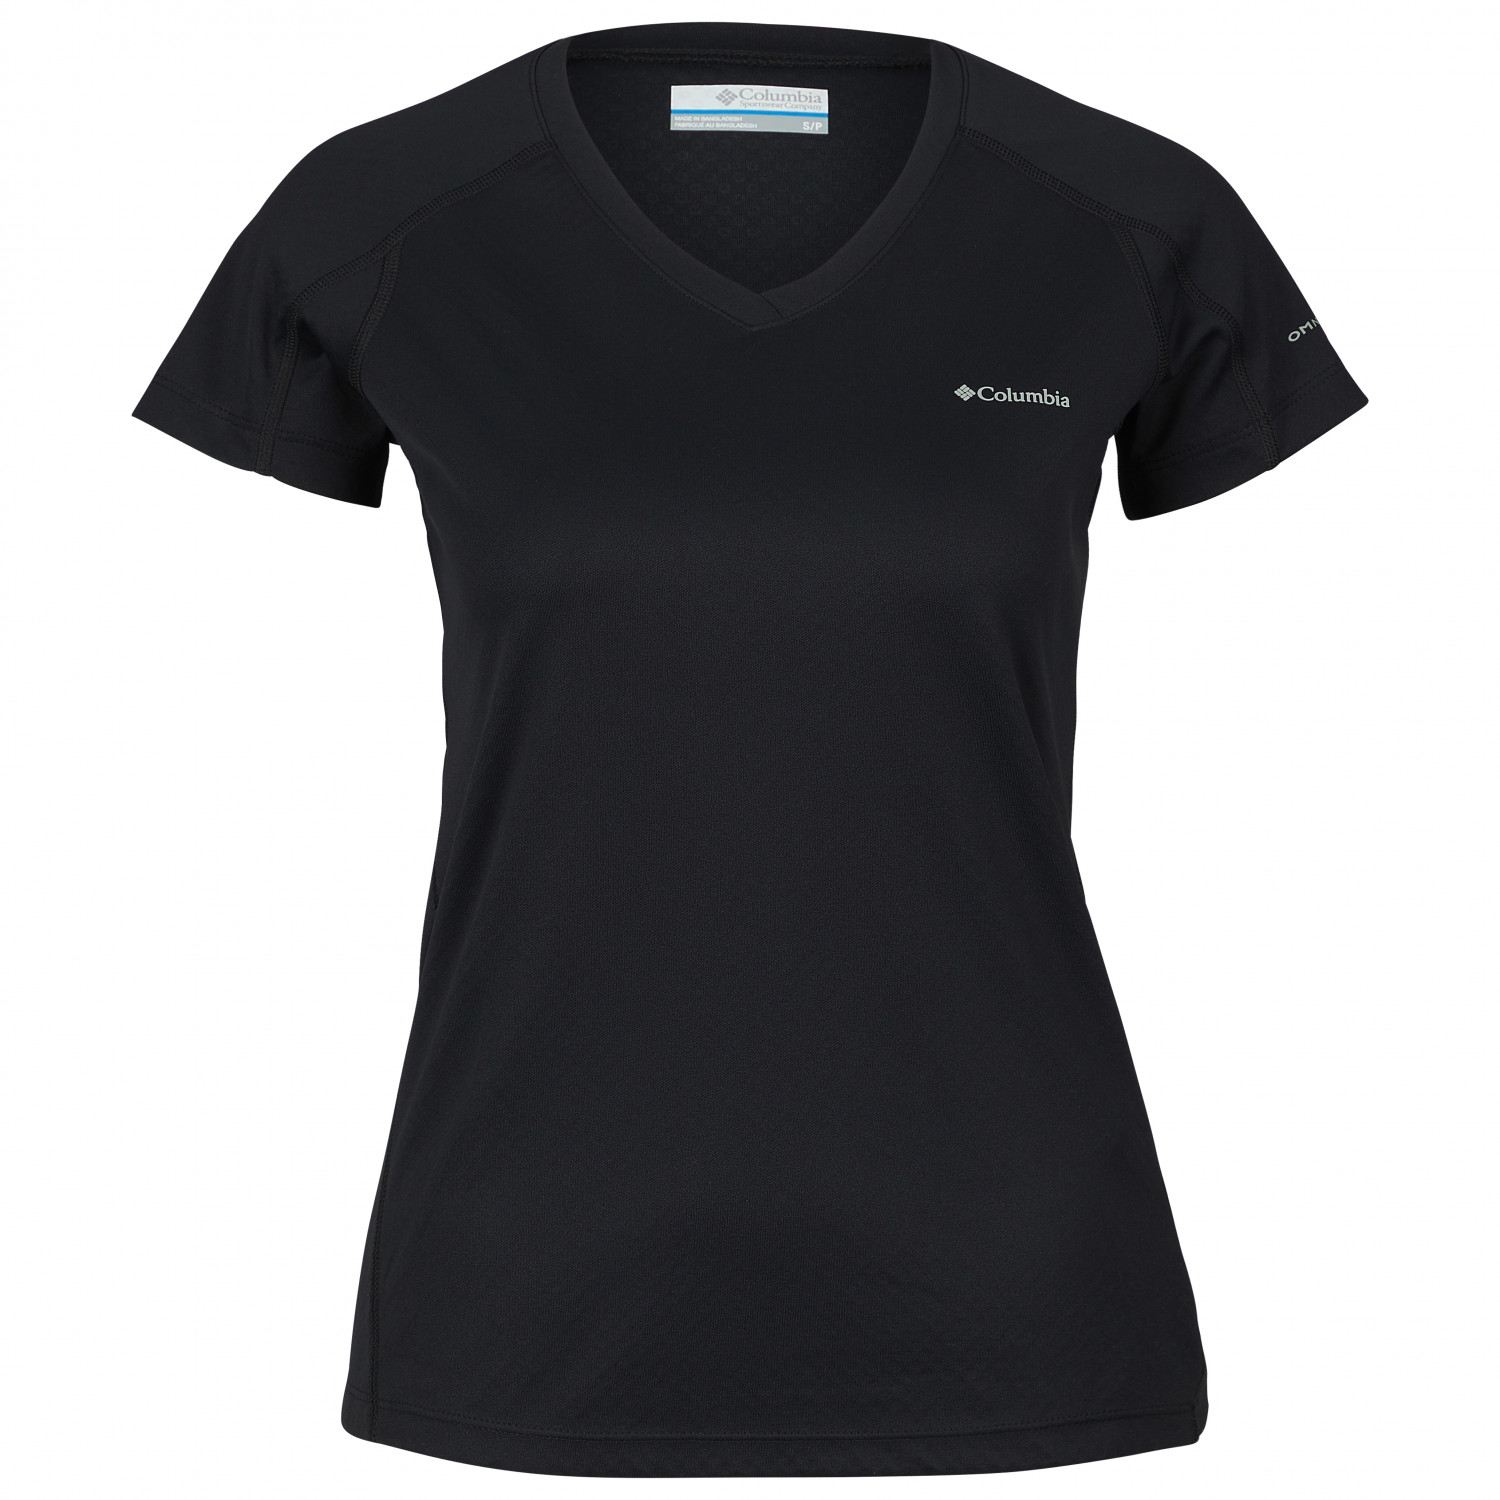 Функциональная рубашка Columbia Women's Zero Rules Short Sleeve Shirt, черный